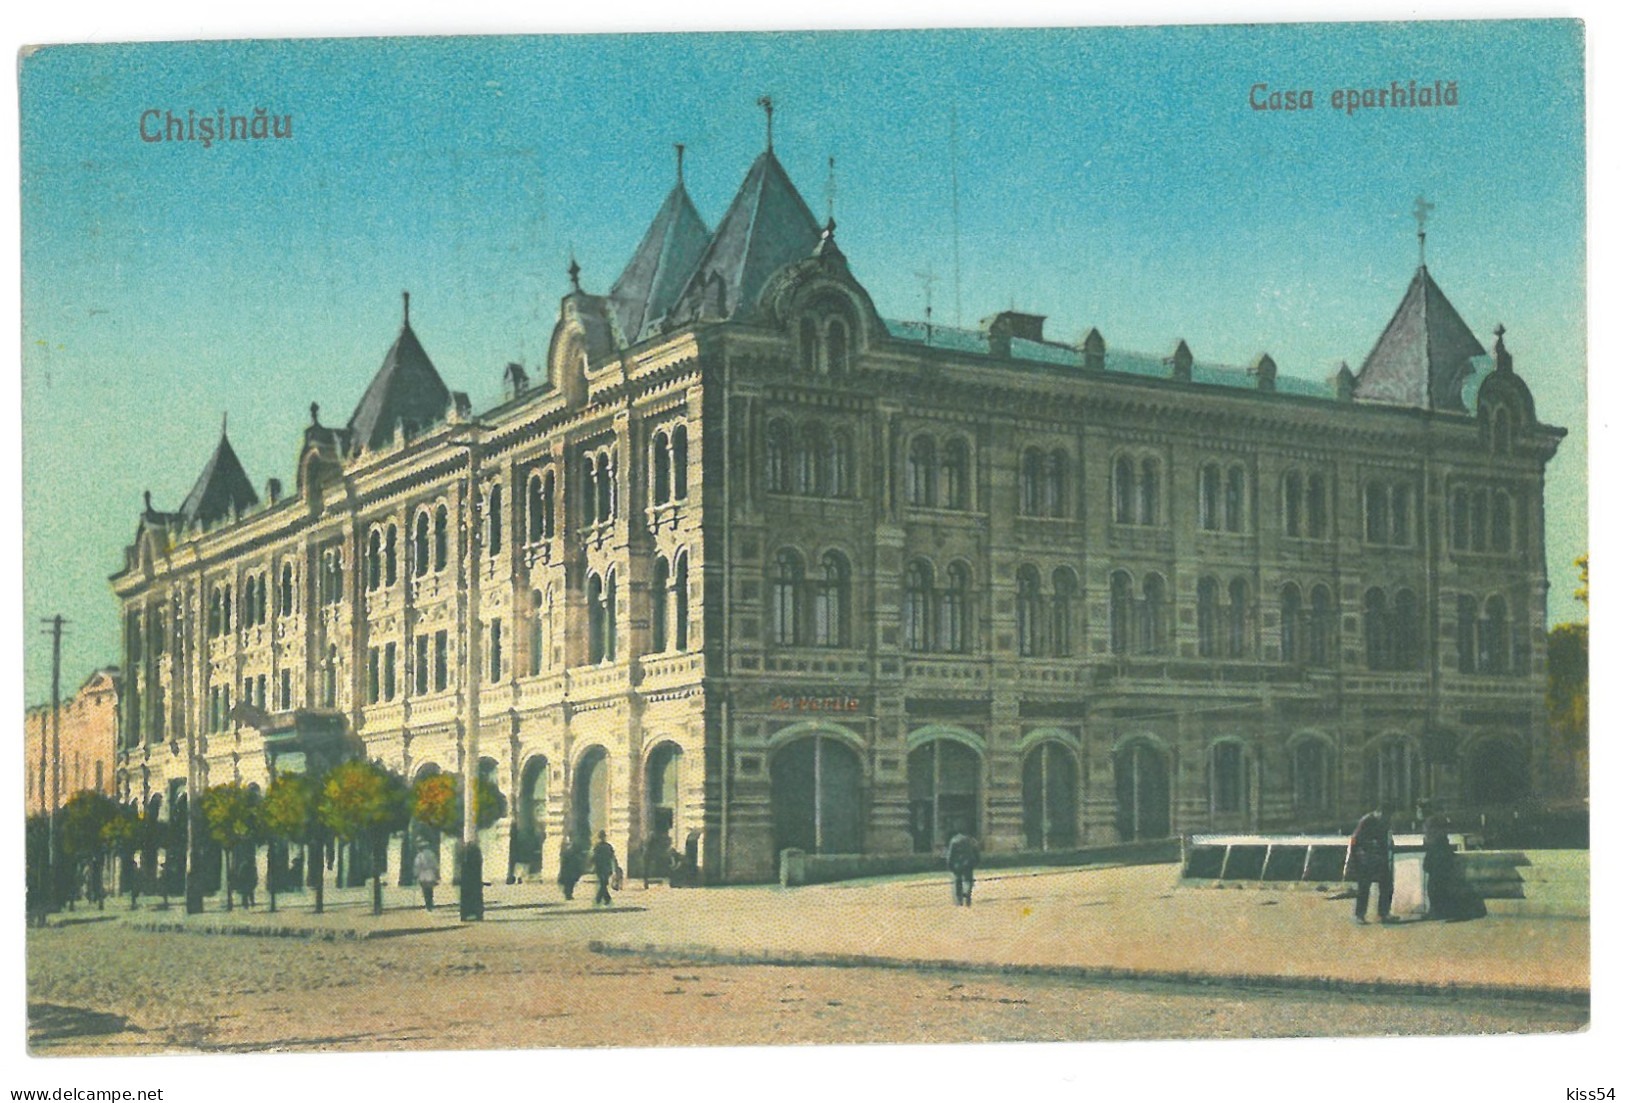 MOL 1 - 16270 CHISINAU, Casa Eparhiala, Moldova - Old Postcard - Used - 1925 - Moldavië